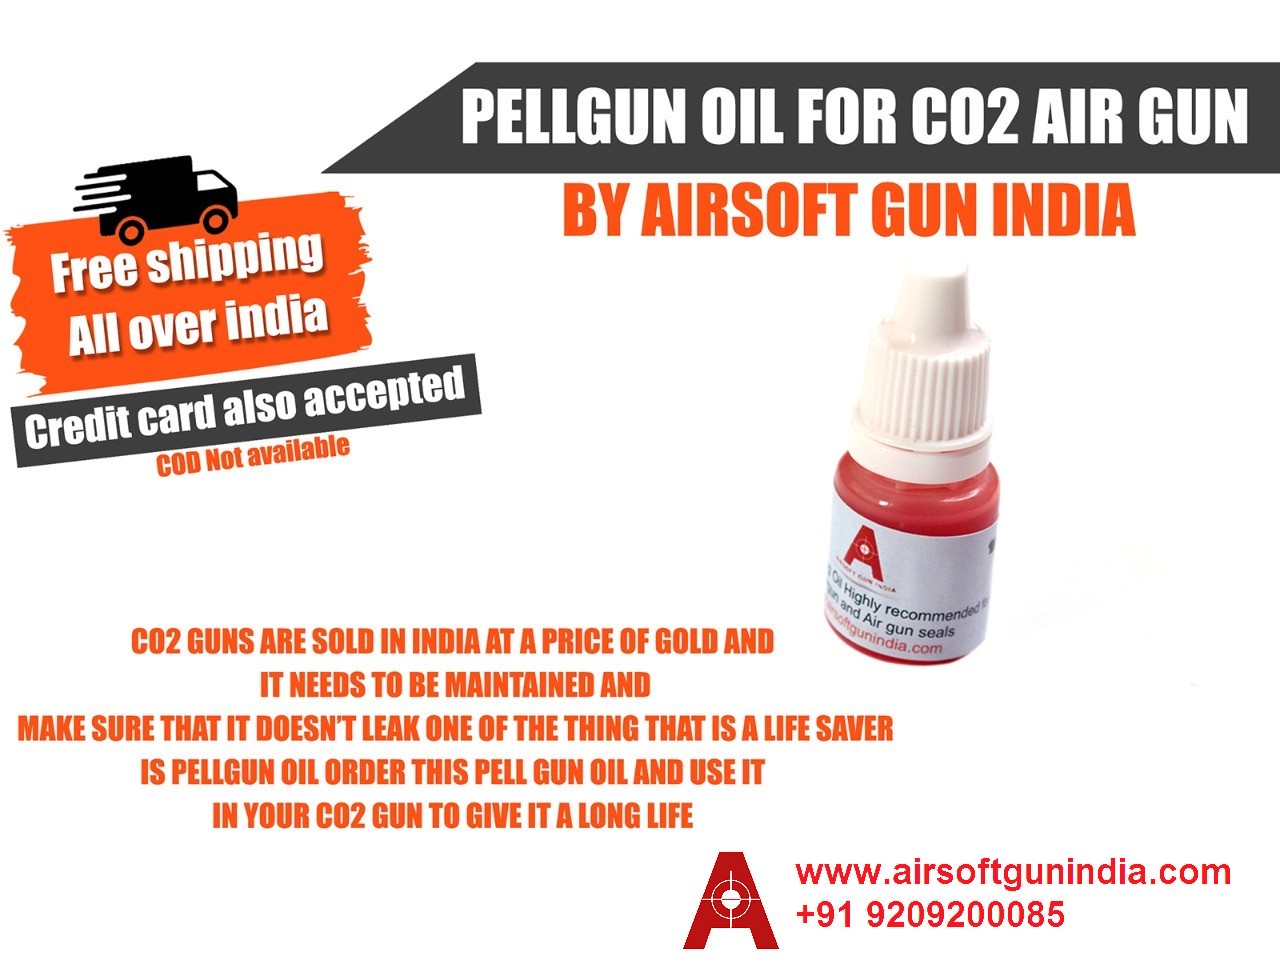 Airsoft Gun India  Pellgun Oil For Co2 Air Gun